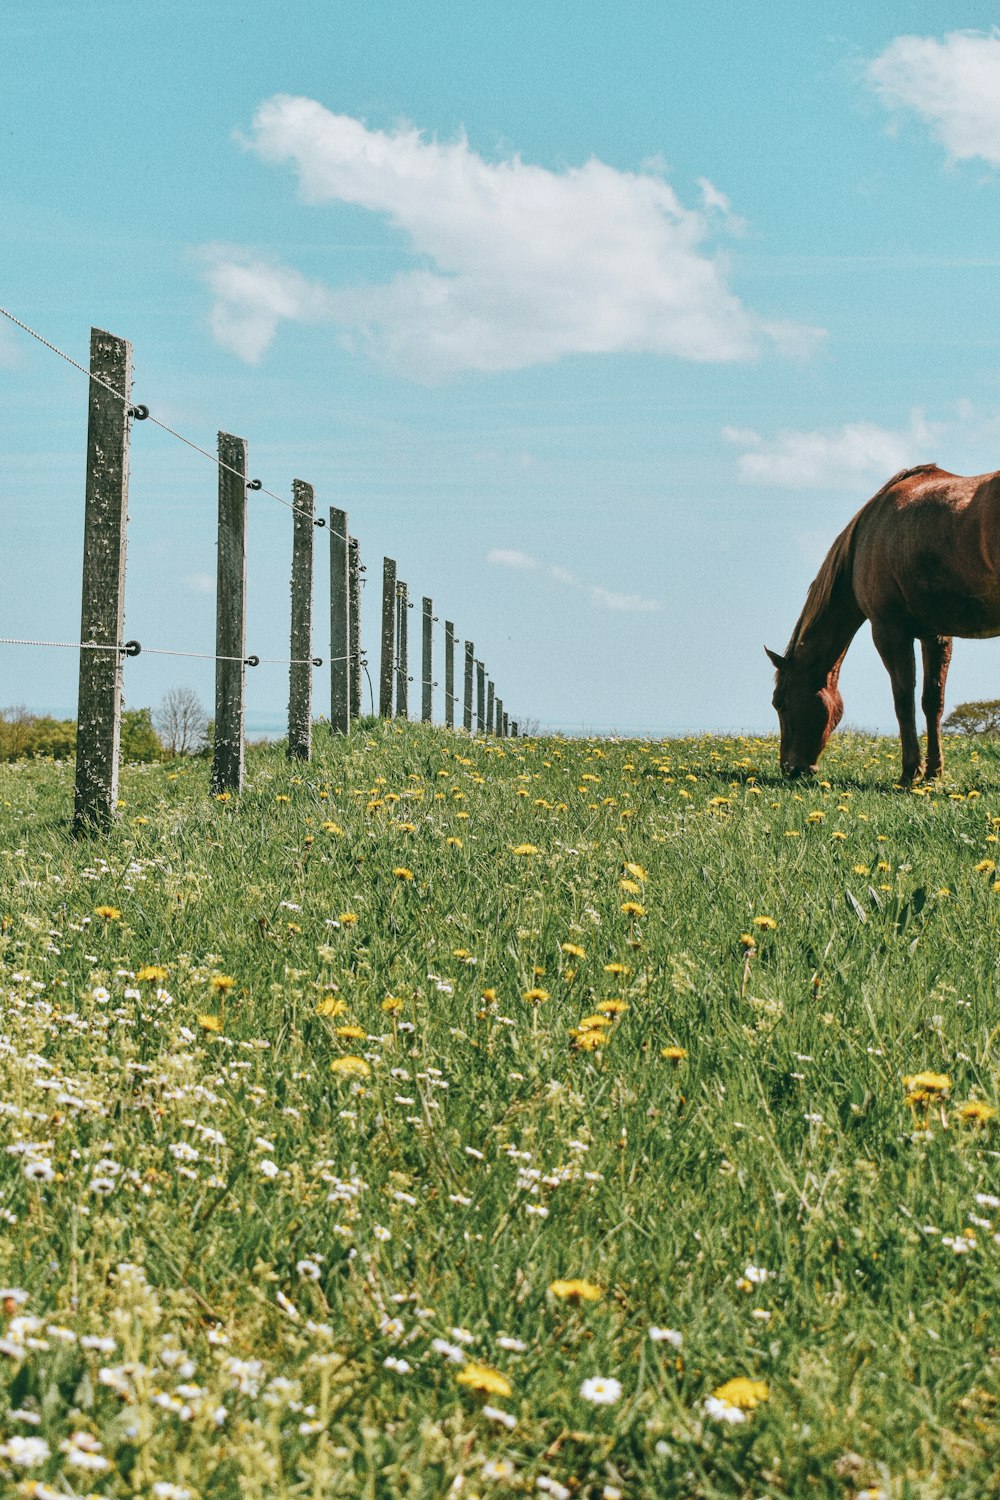 昼間、緑の芝生で草を食べる茶色の馬